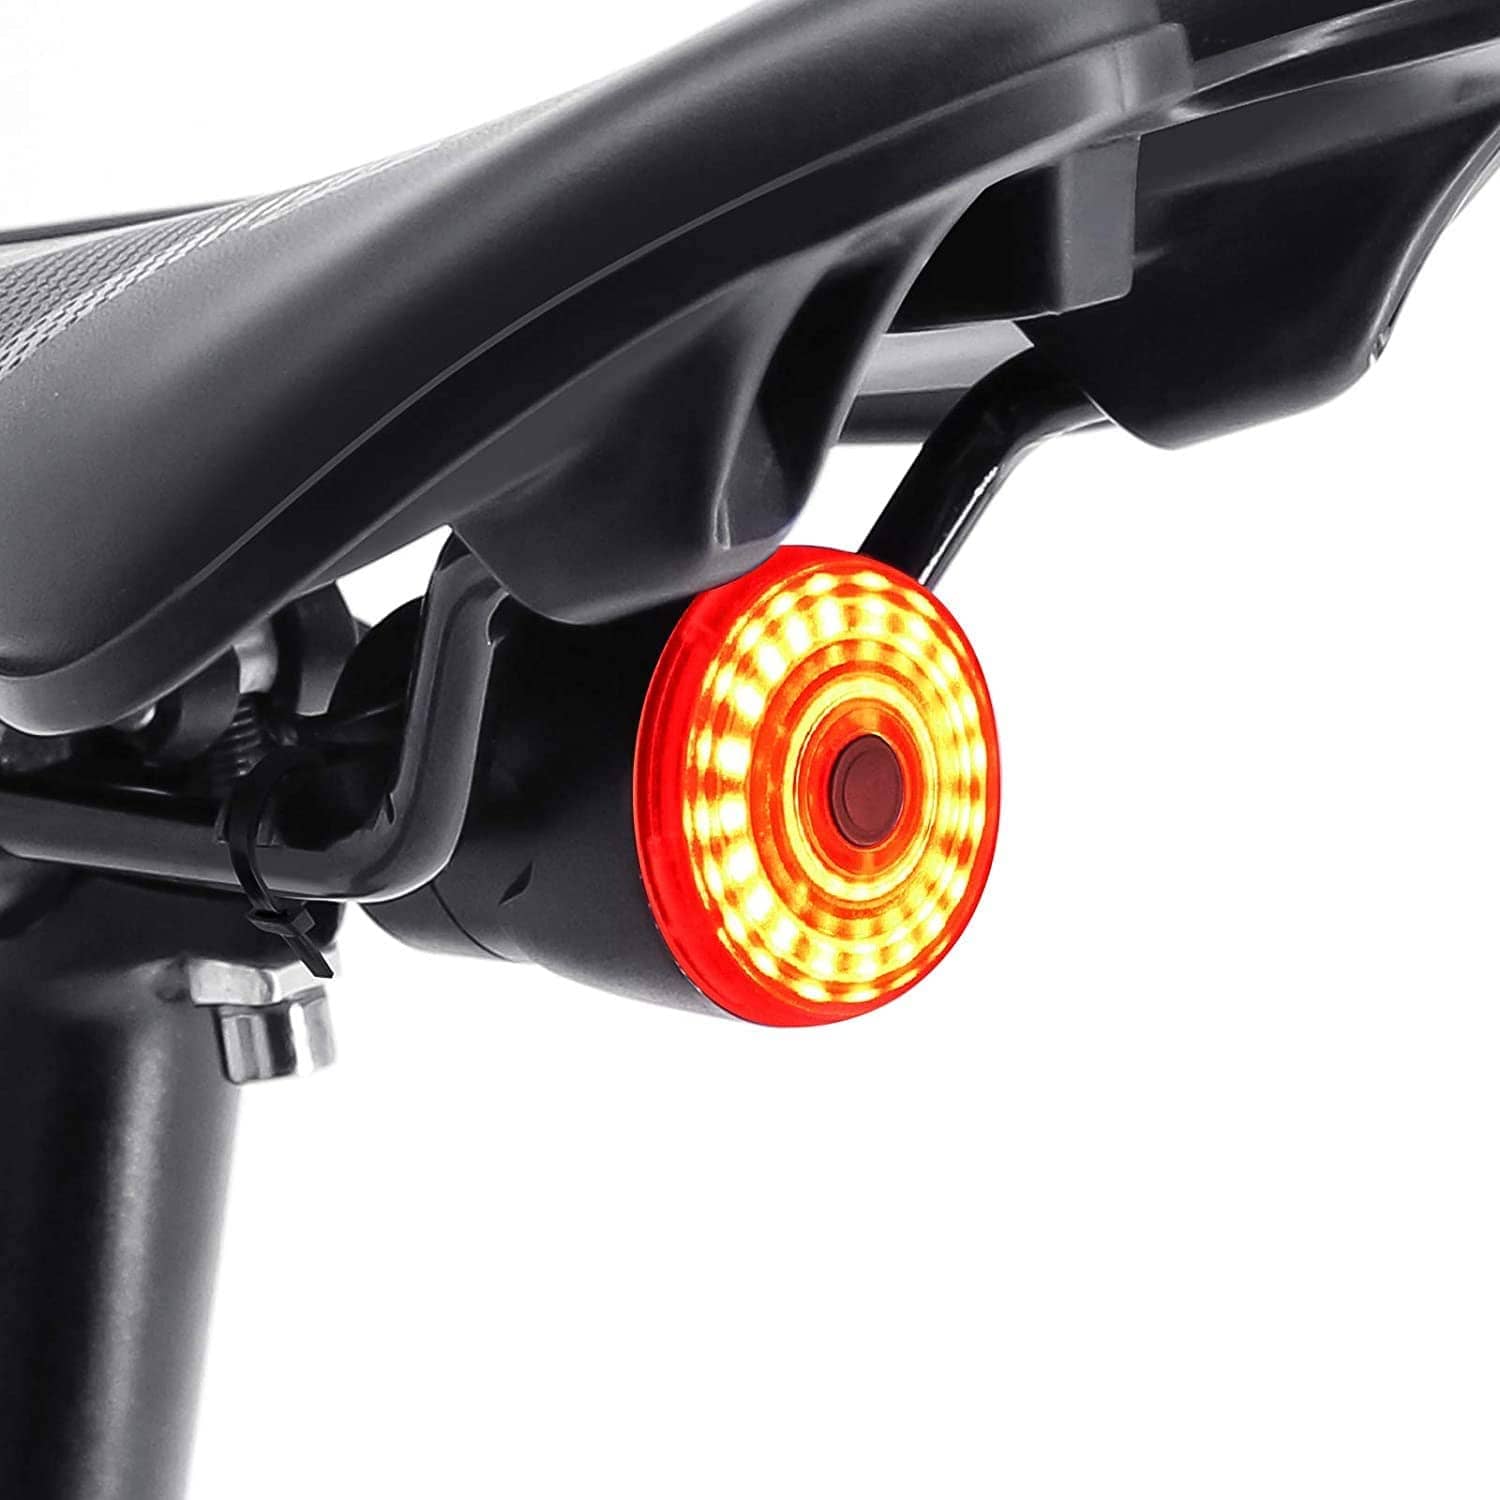 Geyoga Cintura Riflettente LED Ingranaggio Riflettente Ricaricabile USB Luci Marcia Cintura Regolabile Alta visibilità con LED Verde per Correre Passeggiate Camminare Jogging Sicurezza Bici 